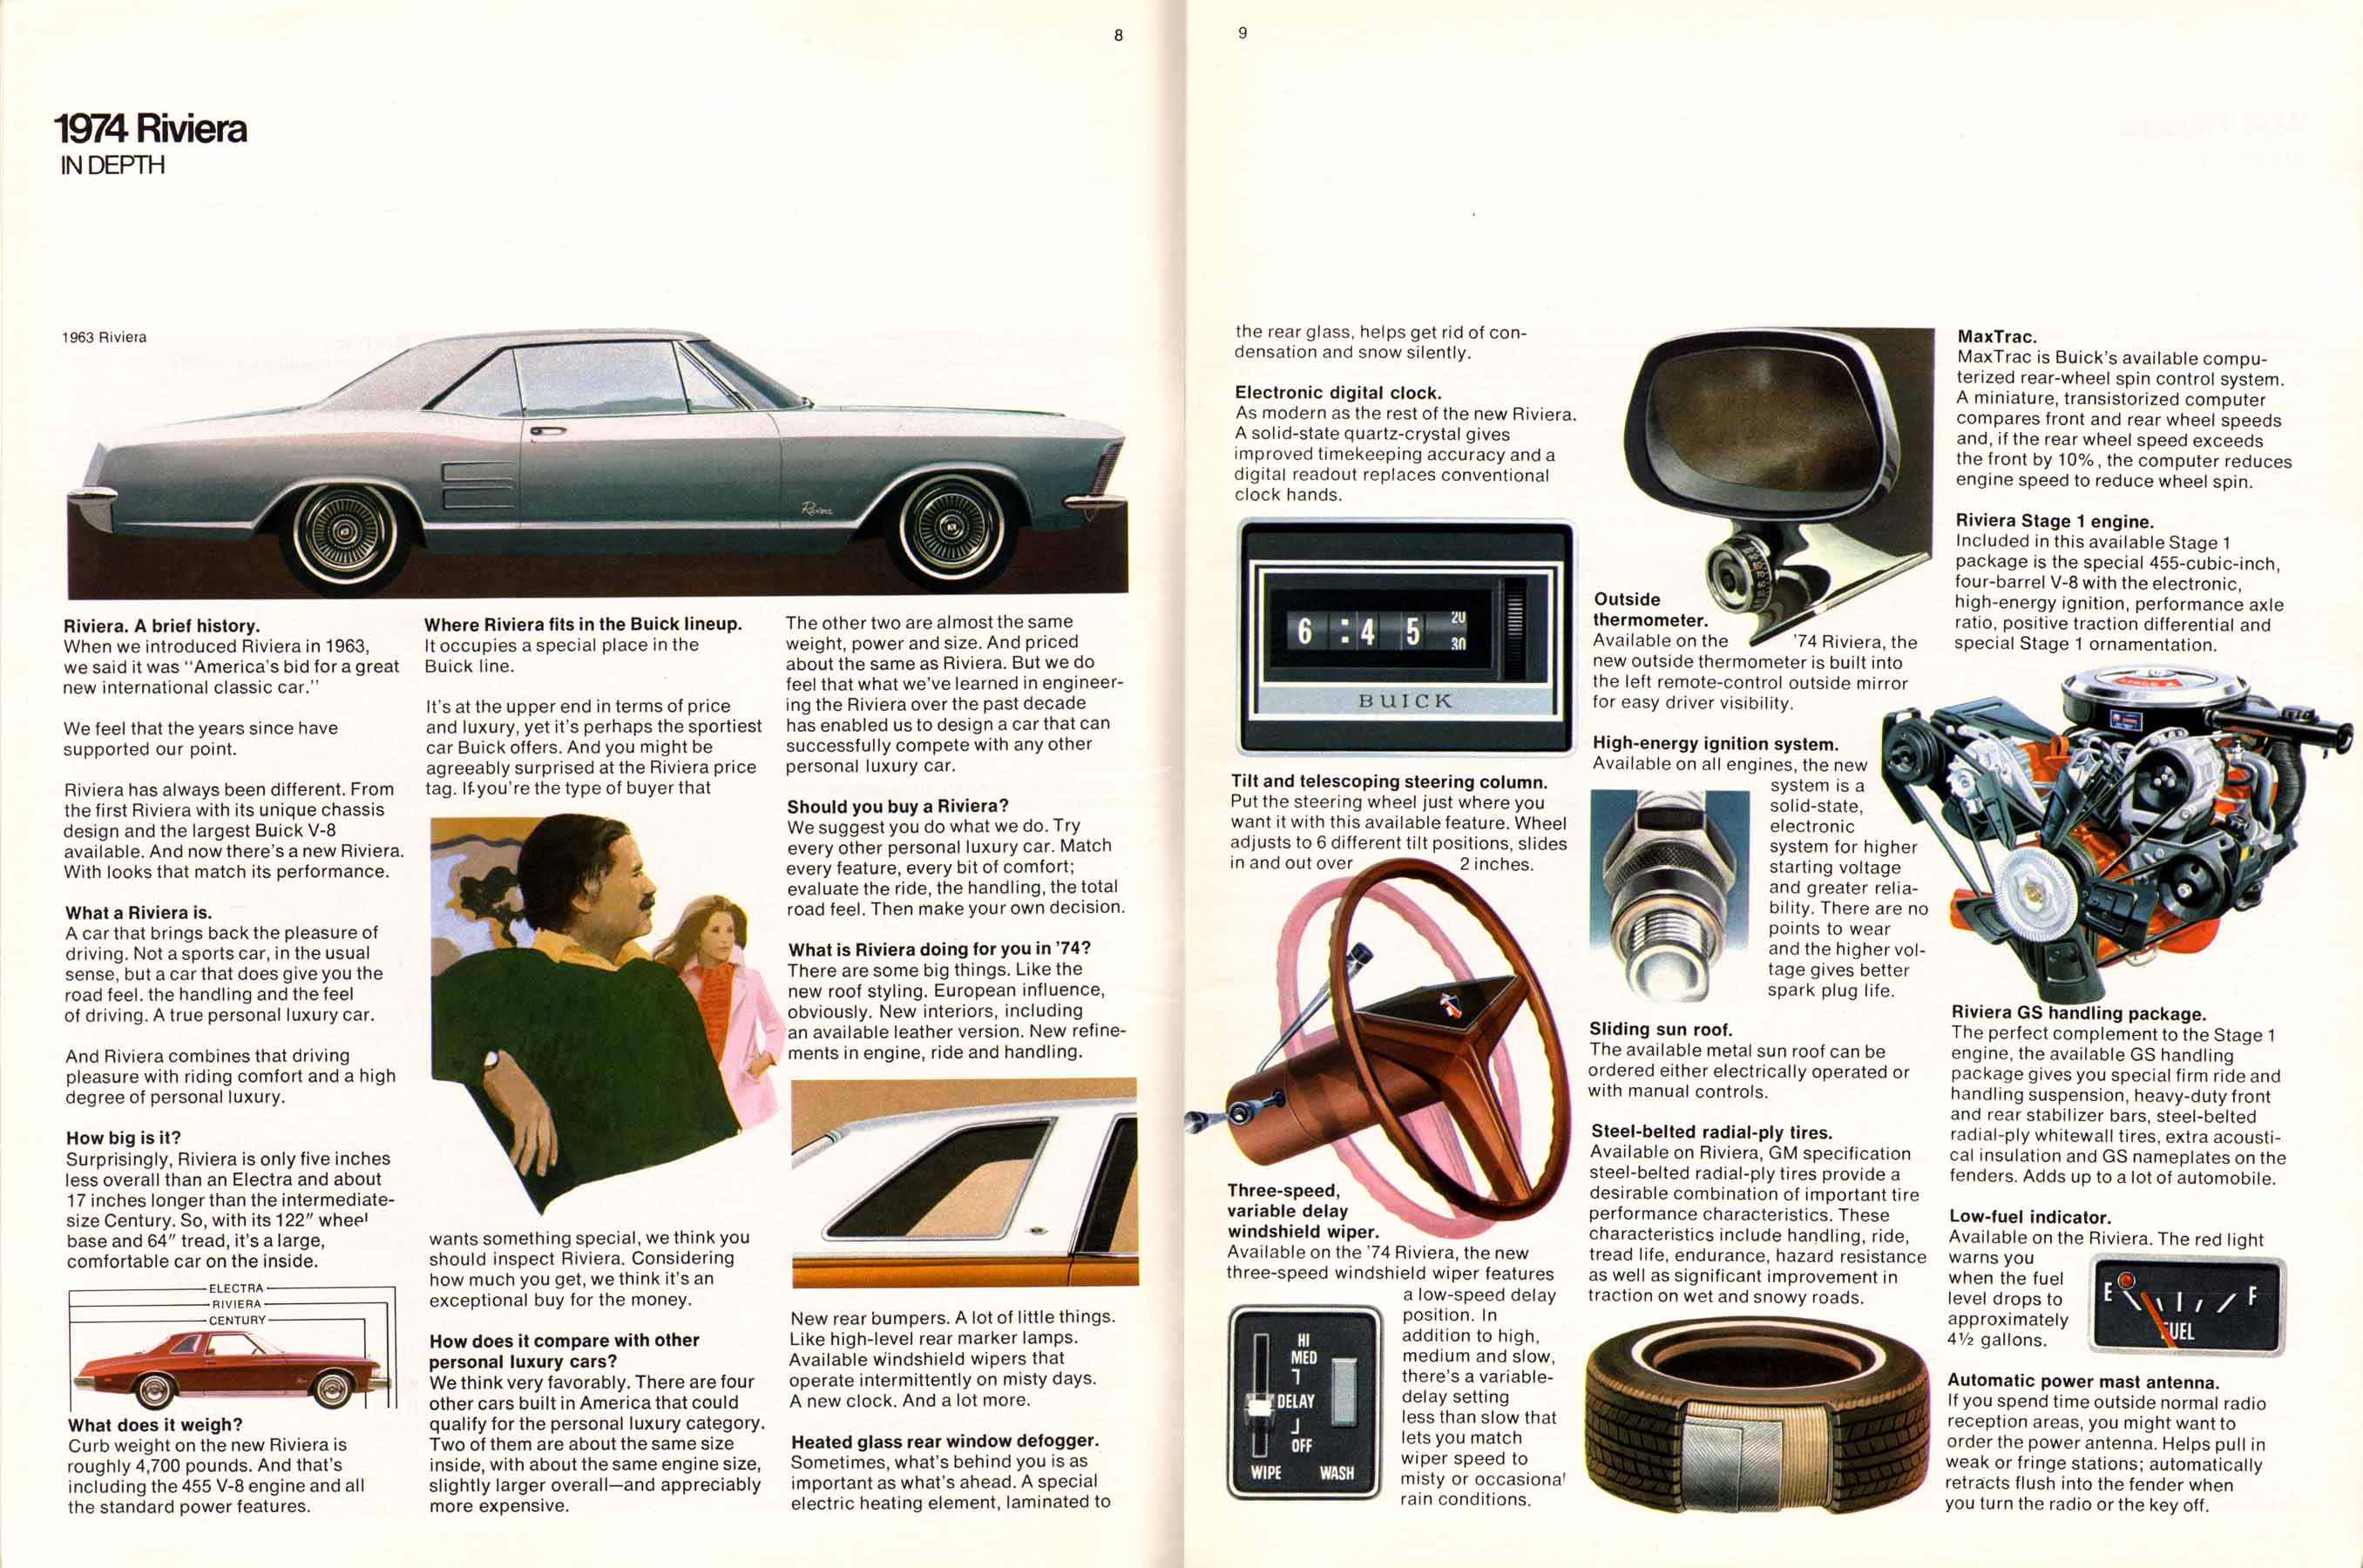 1974 Buick Full Line-10-11